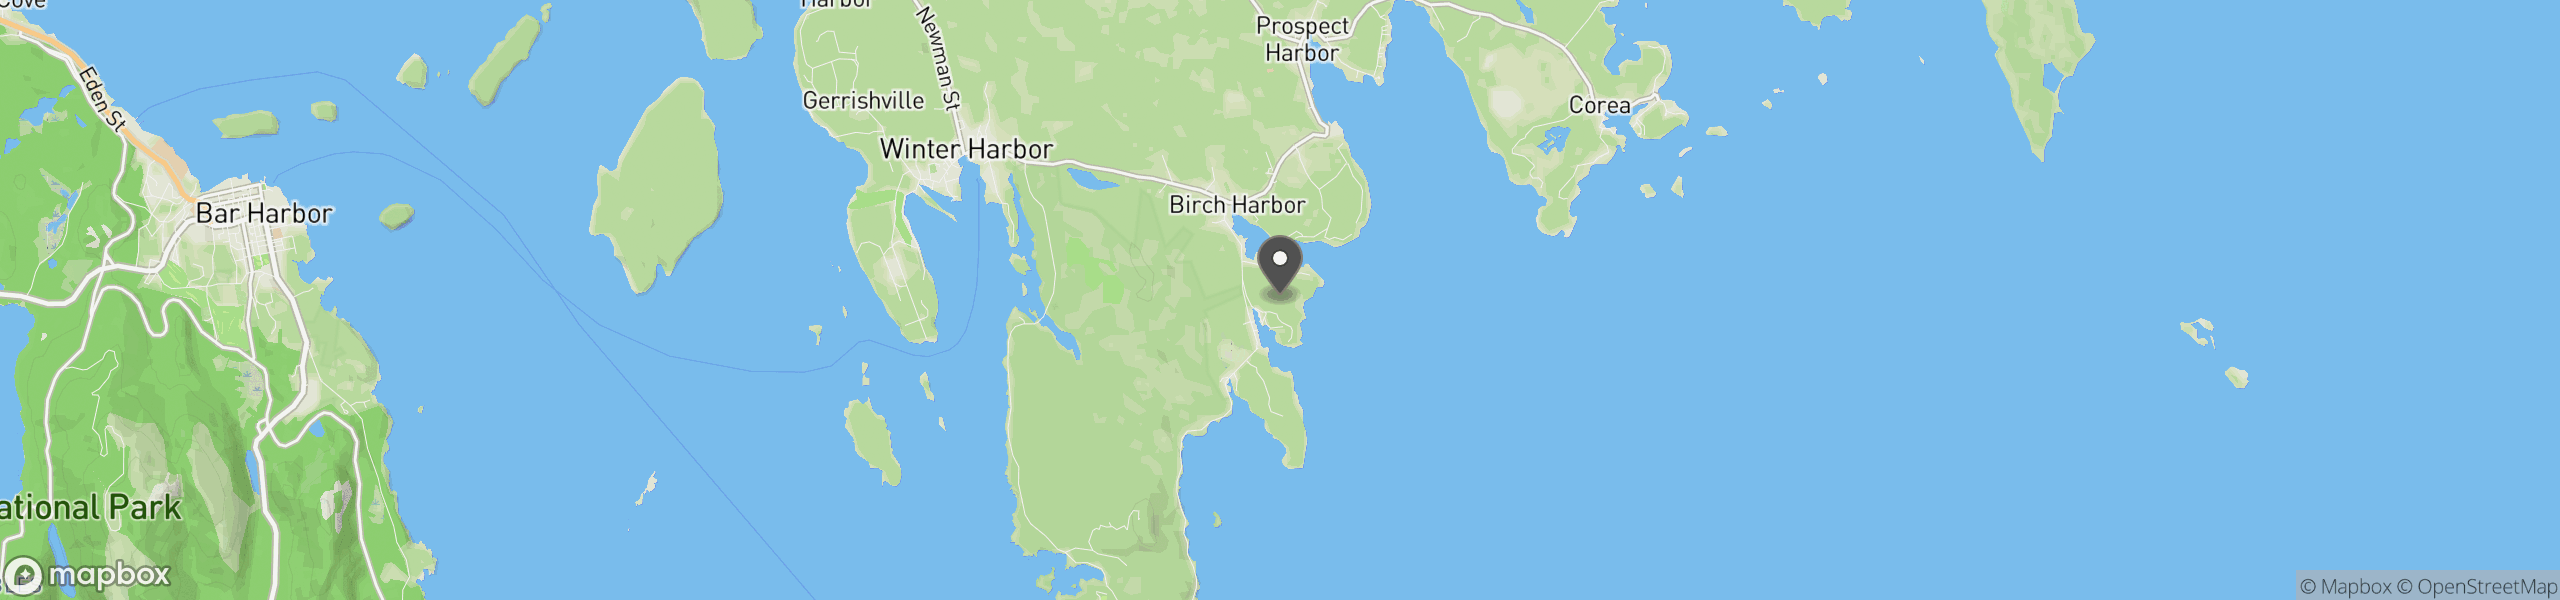 Birch Harbor, ME